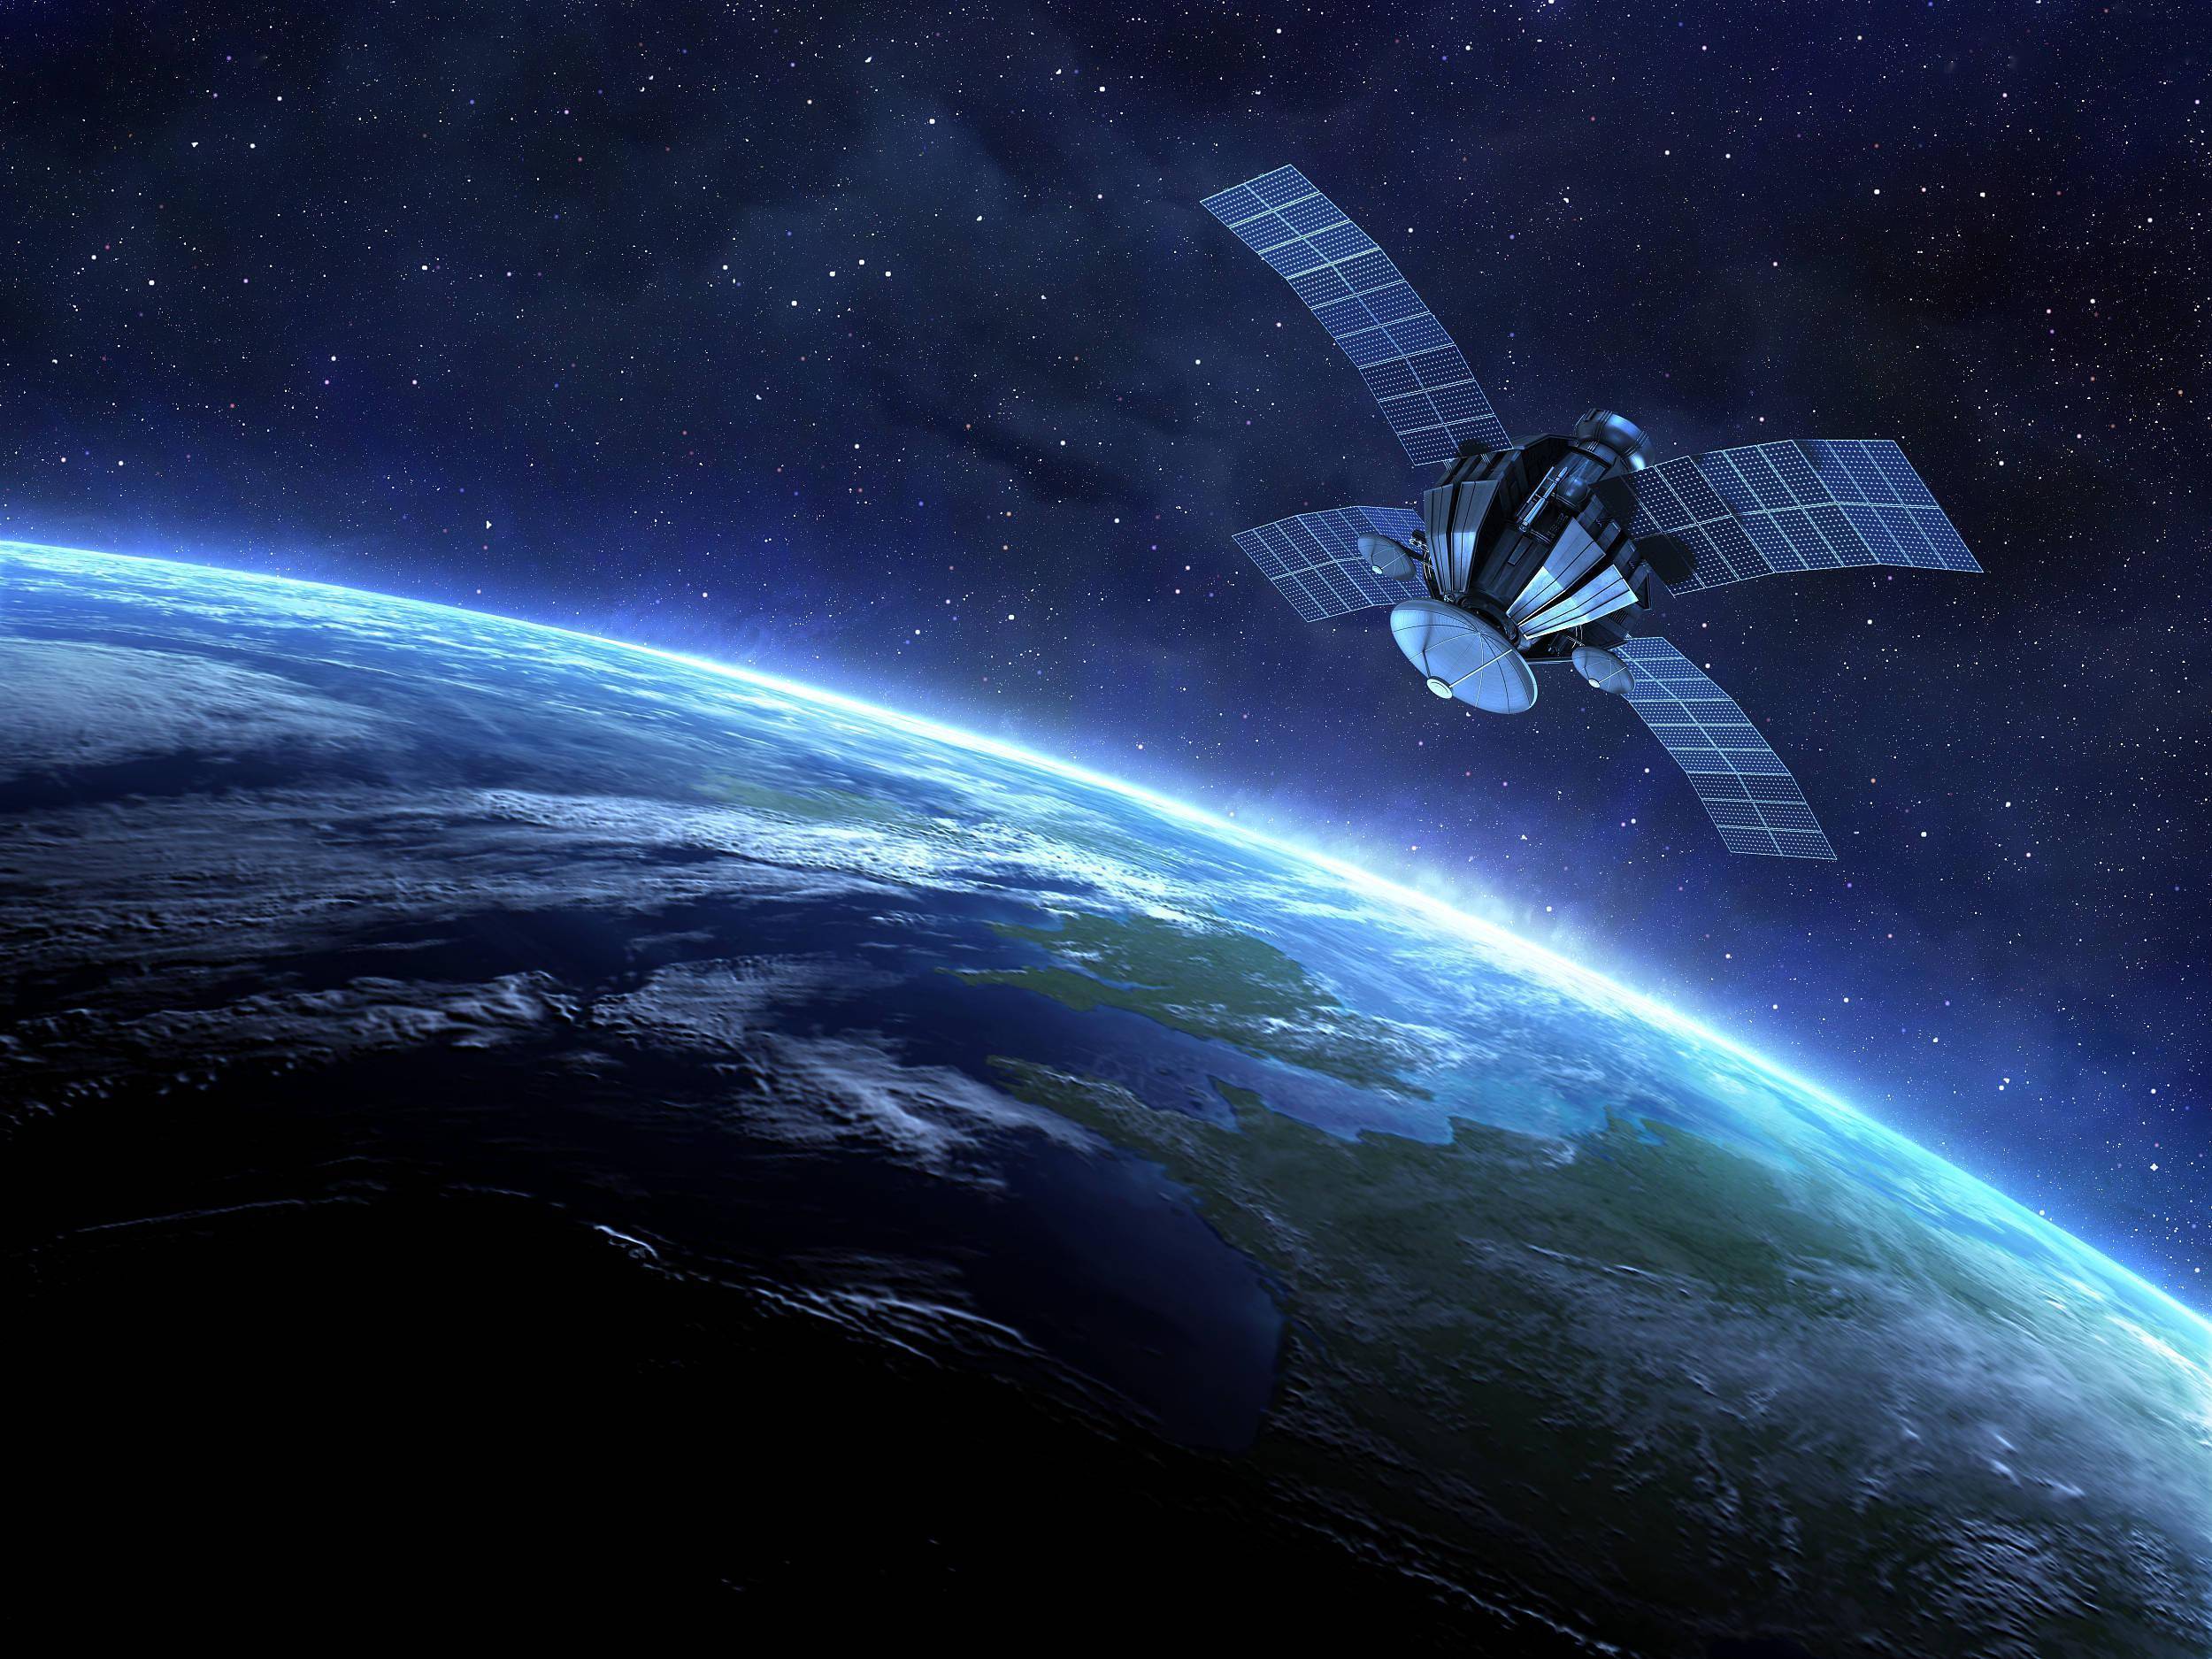 卫星通信系统基本结构与特点-世讯电科